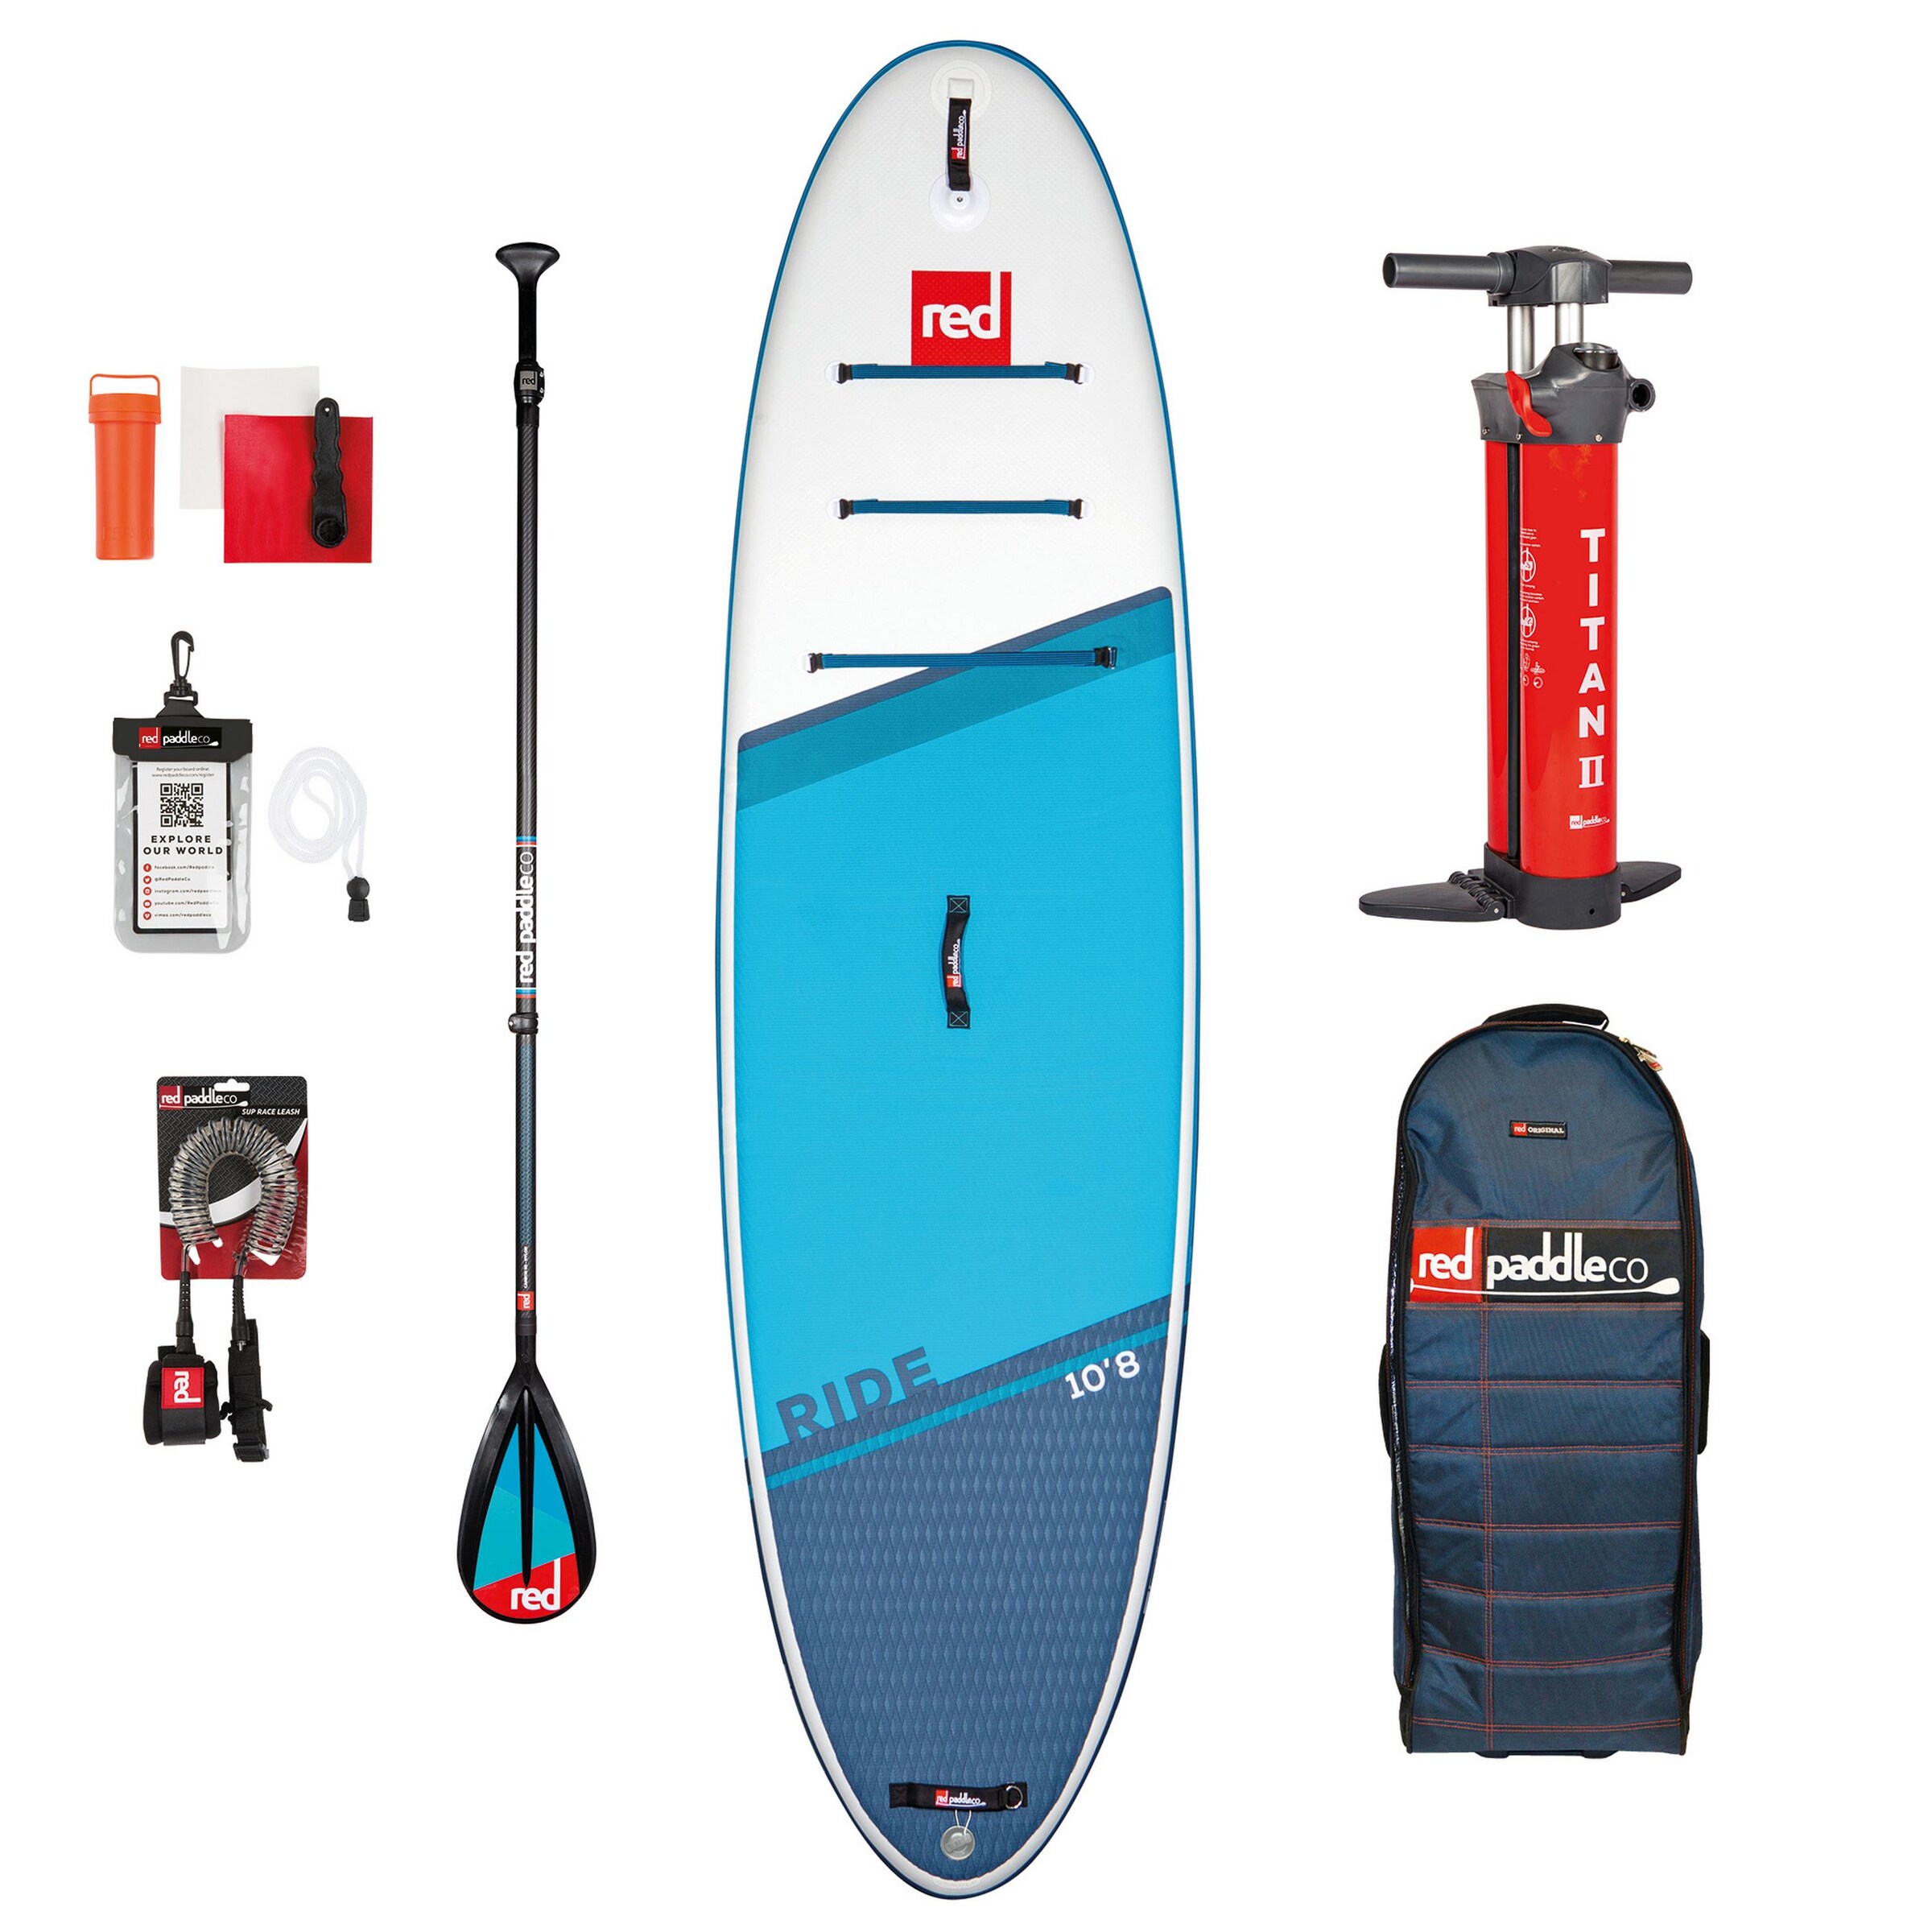 Männer Sportausrüstung Red Paddle Set 'Ride' in Blau, Hellblau - DL84910